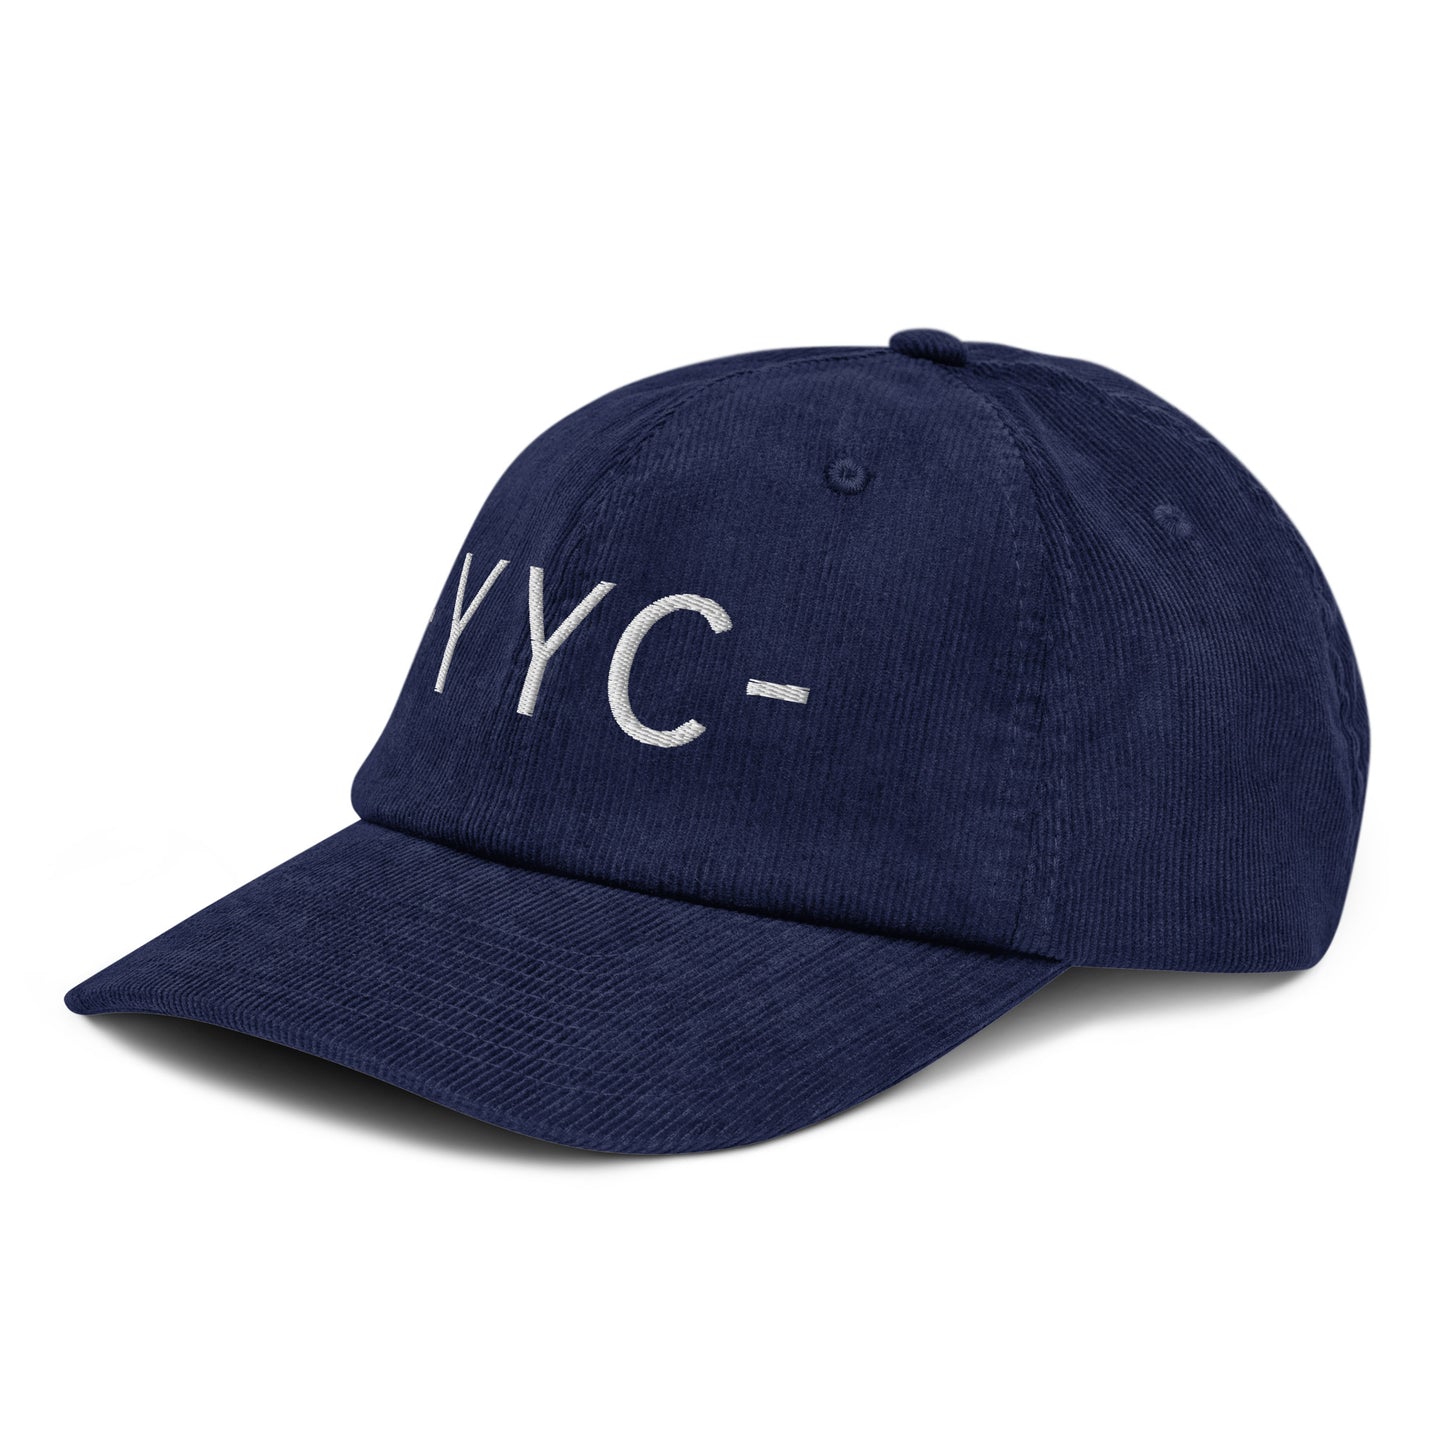 Souvenir Corduroy Hat - White • YYC Calgary • YHM Designs - Image 01